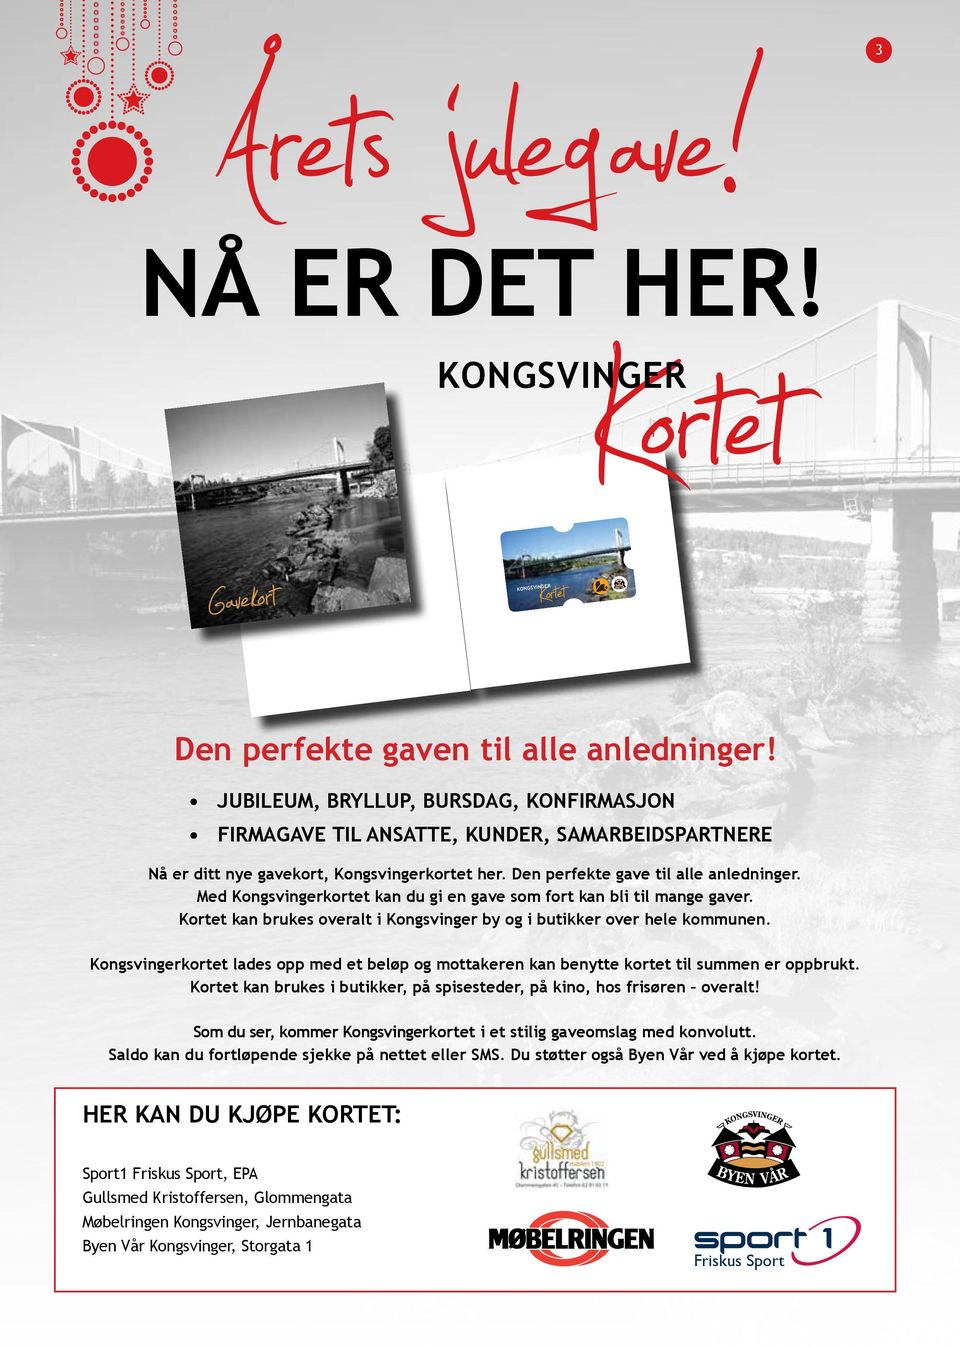 Med Kongsvingerkortet kan du gi en gave som fort kan bli til mange gaver. Kortet kan brukes overalt i Kongsvinger by og i butikker over hele kommunen.